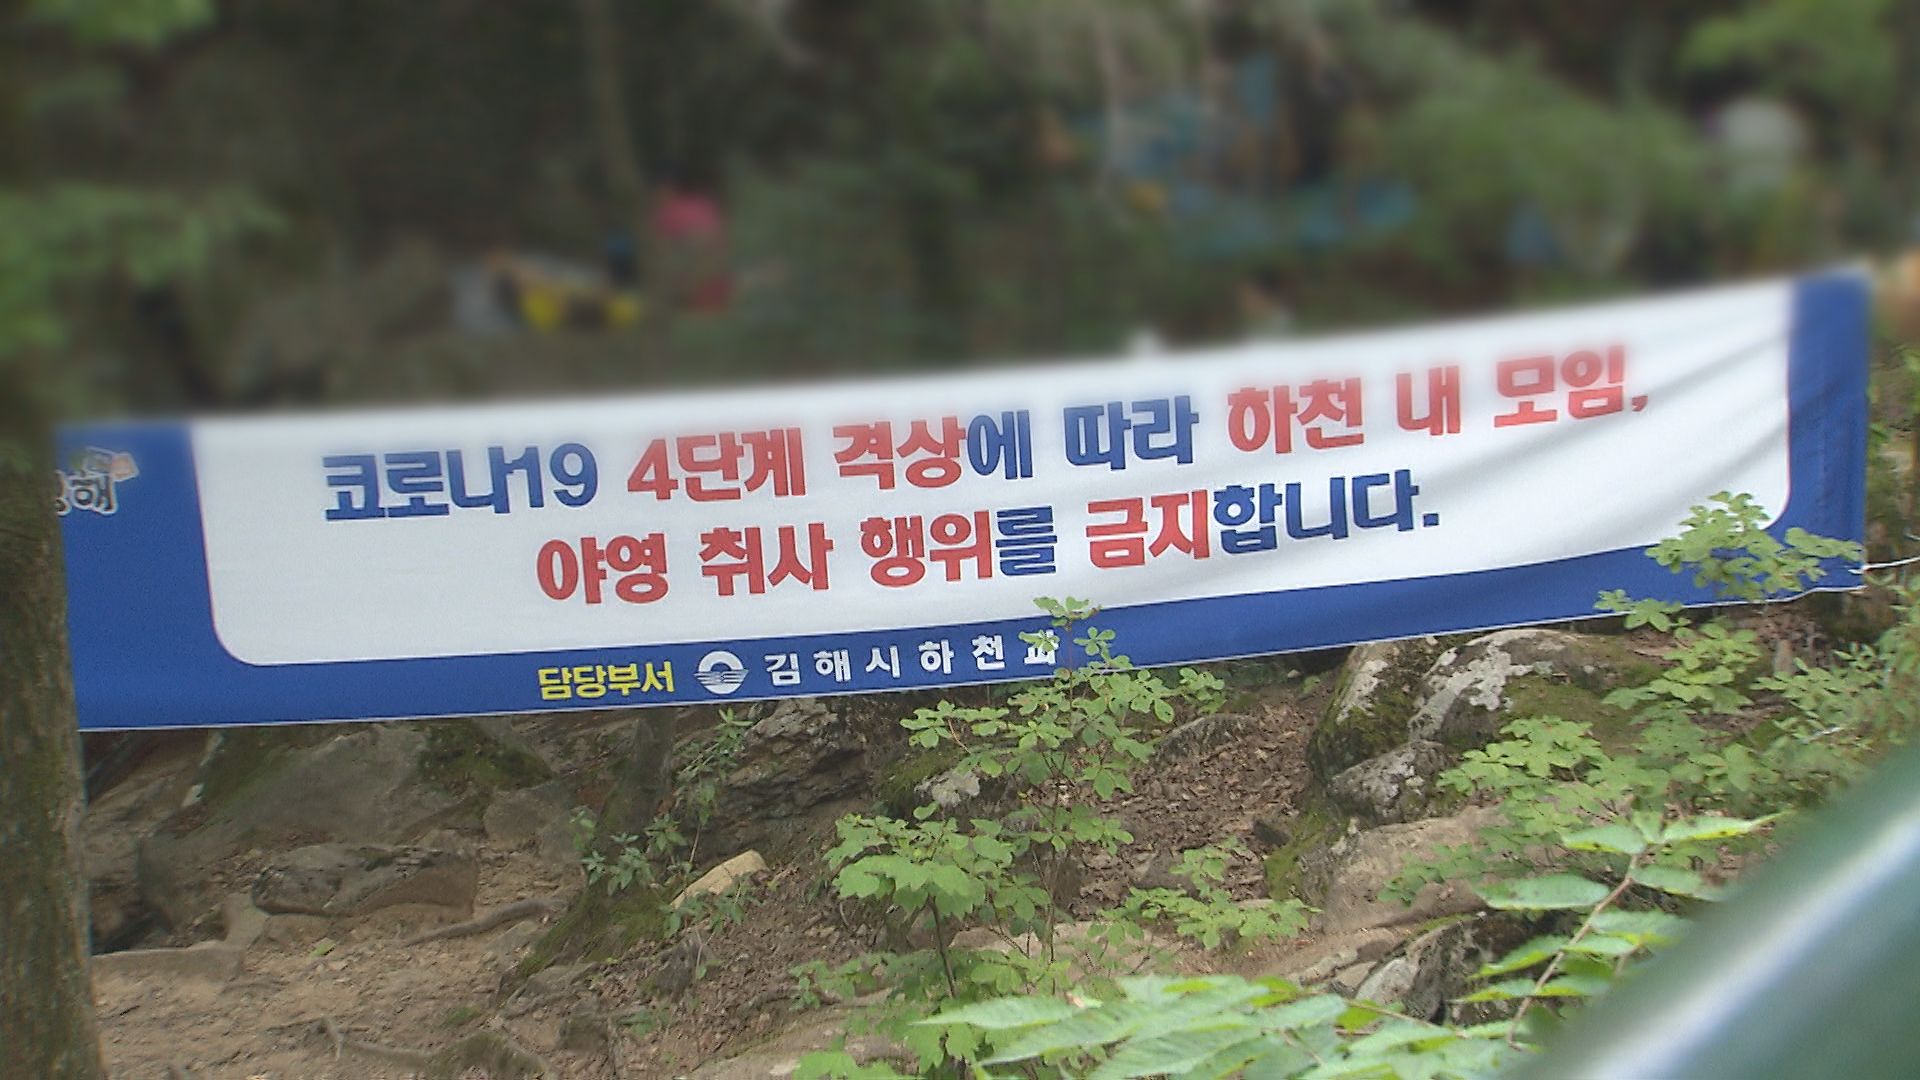 김해시가 모임과 야영, 취사 행위를 금지한다며 계곡에 게시한 현수막